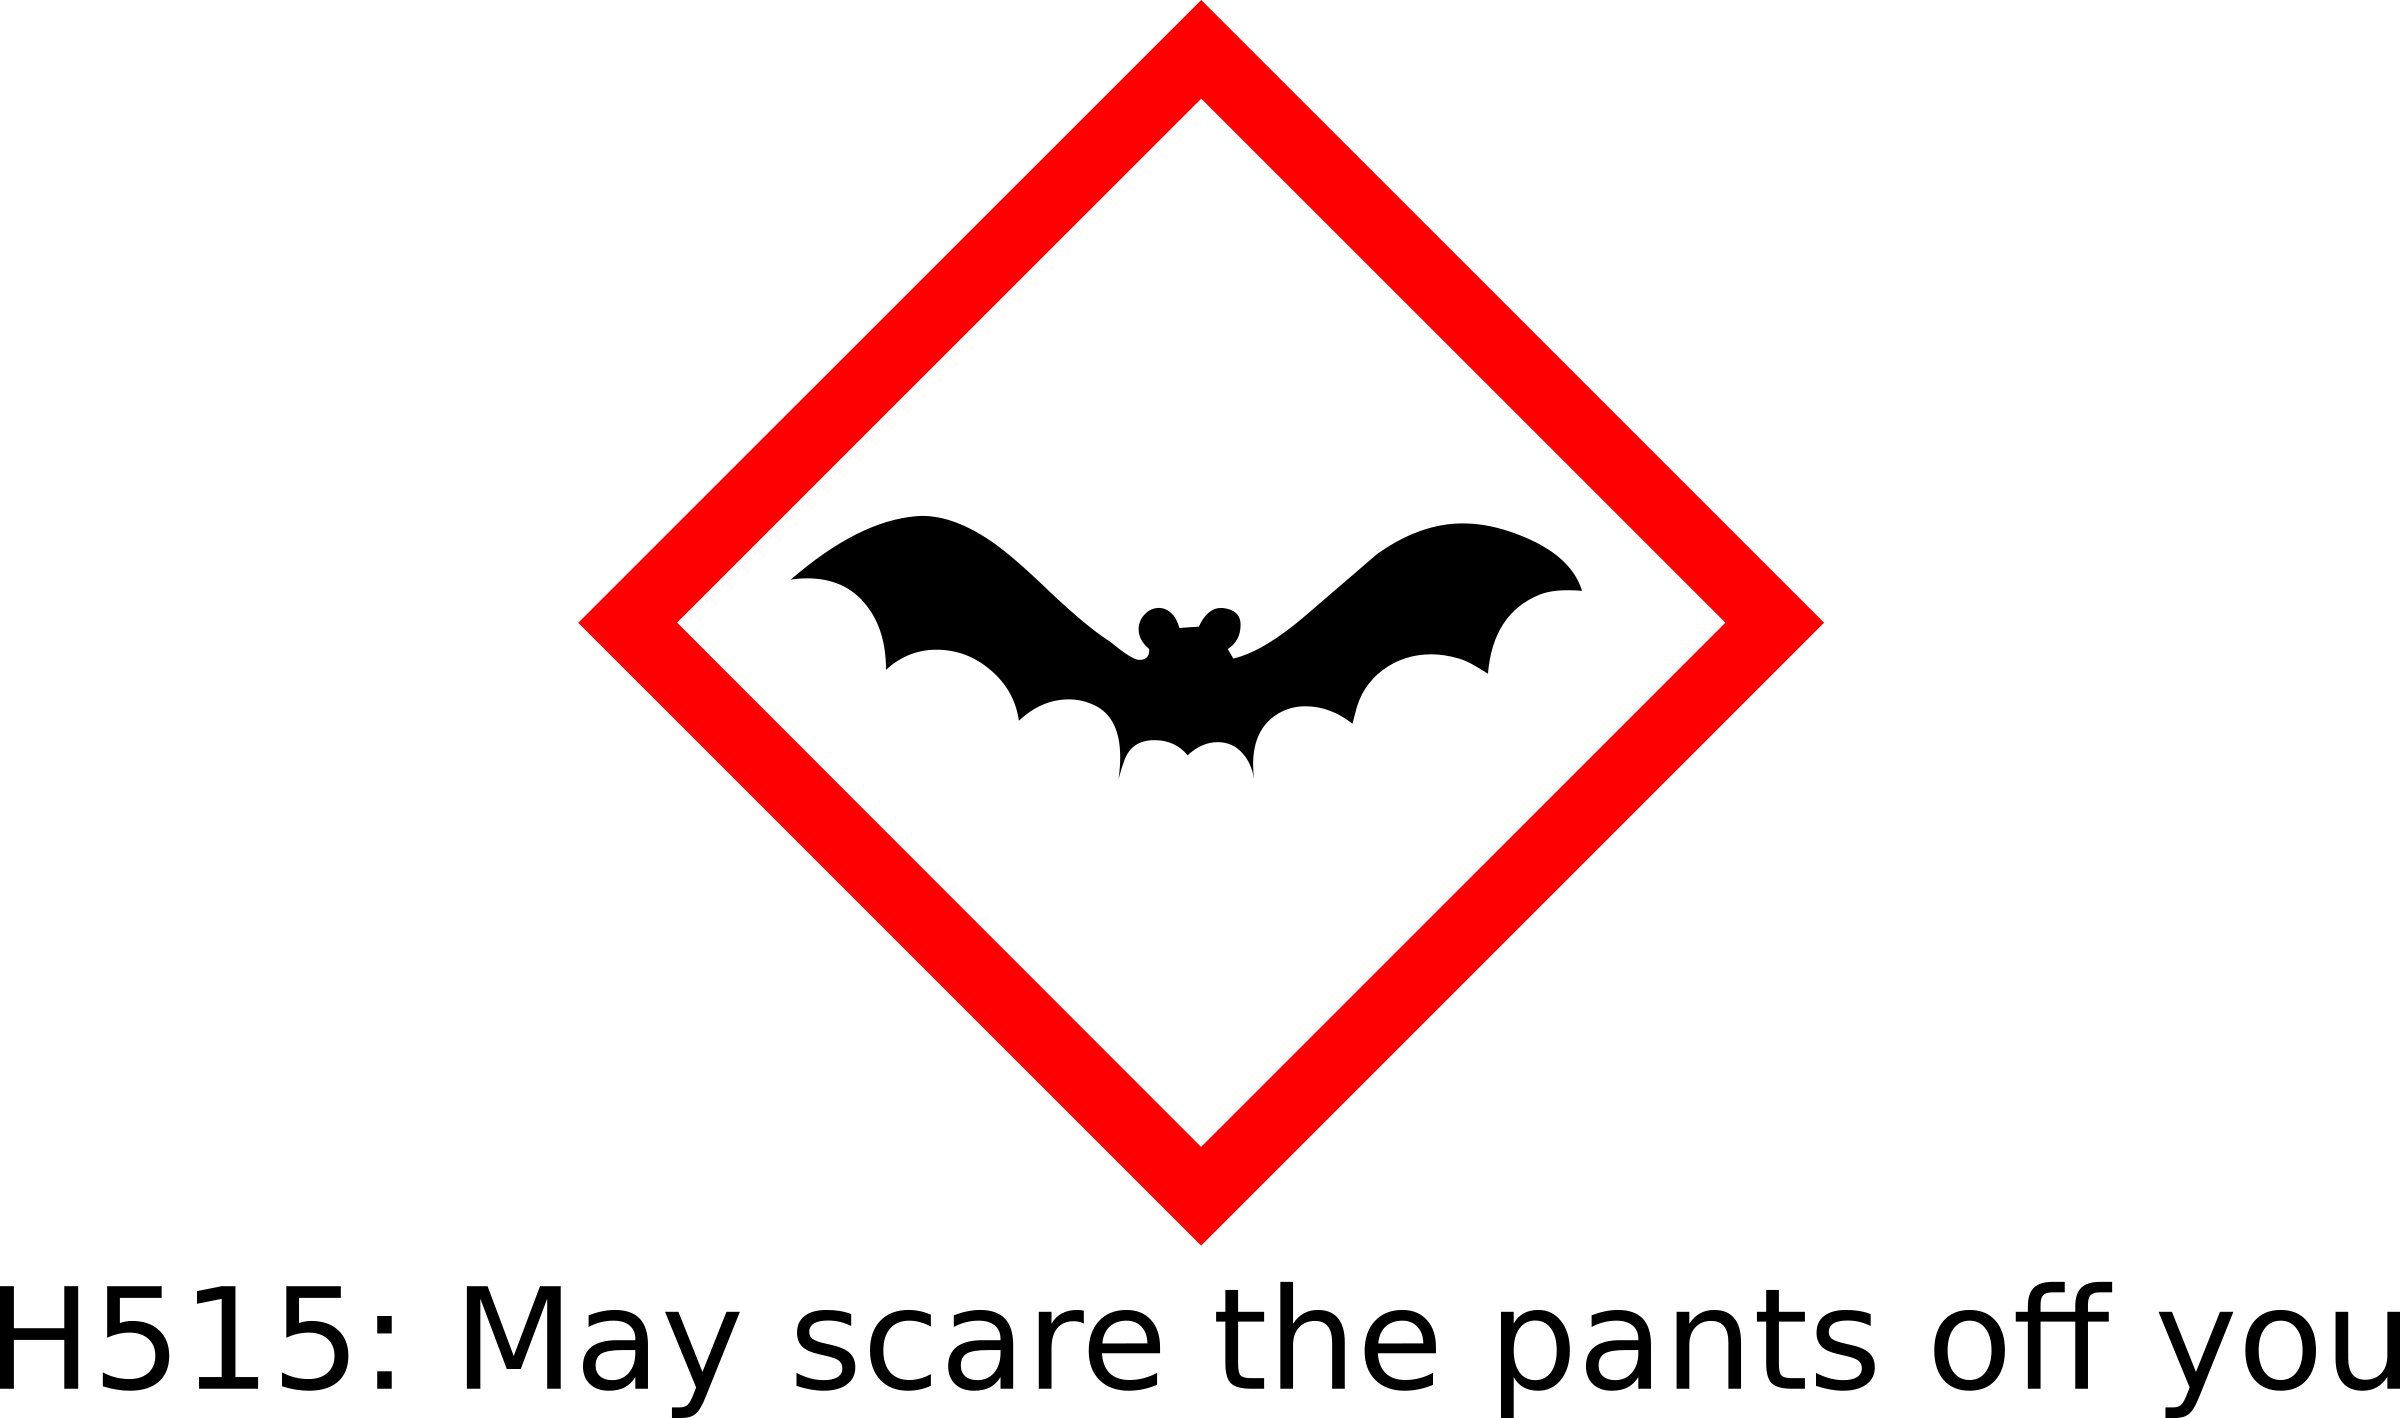 This Free Icons Png Design Of Bat Hazard